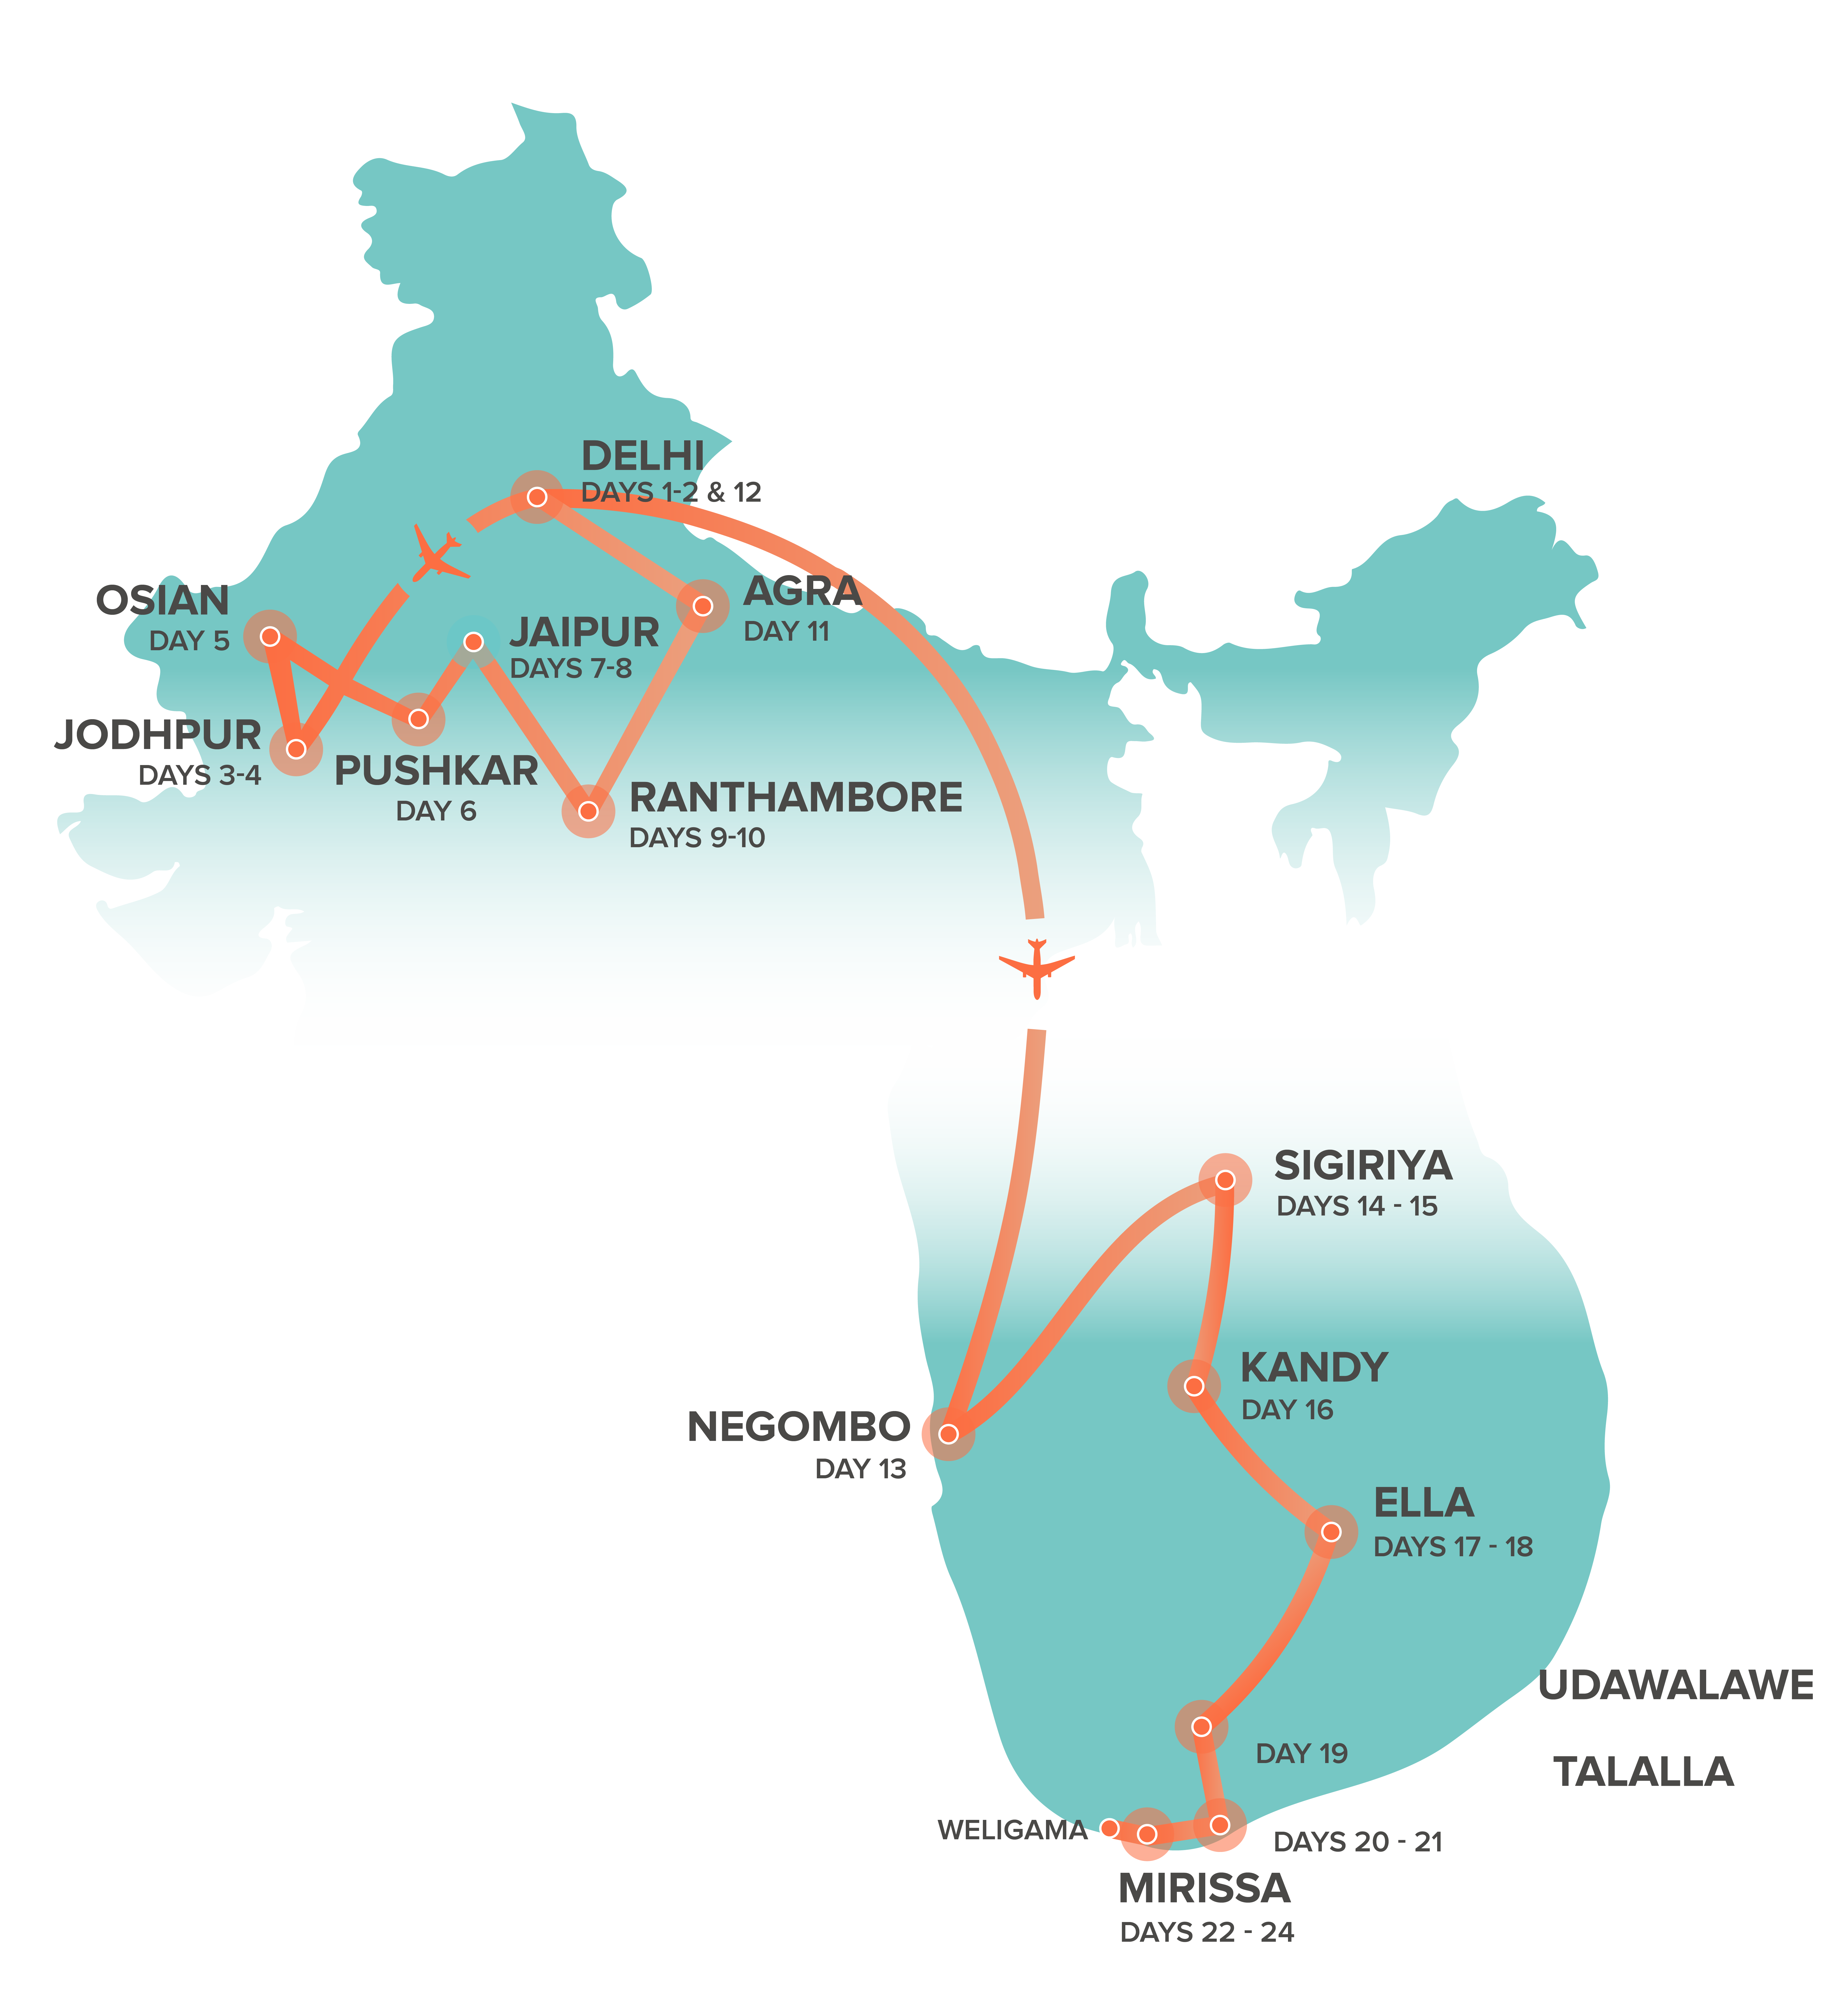 tourhub | Intro Travel | India + Sri Lanka Experience 24 Day | Tour Map